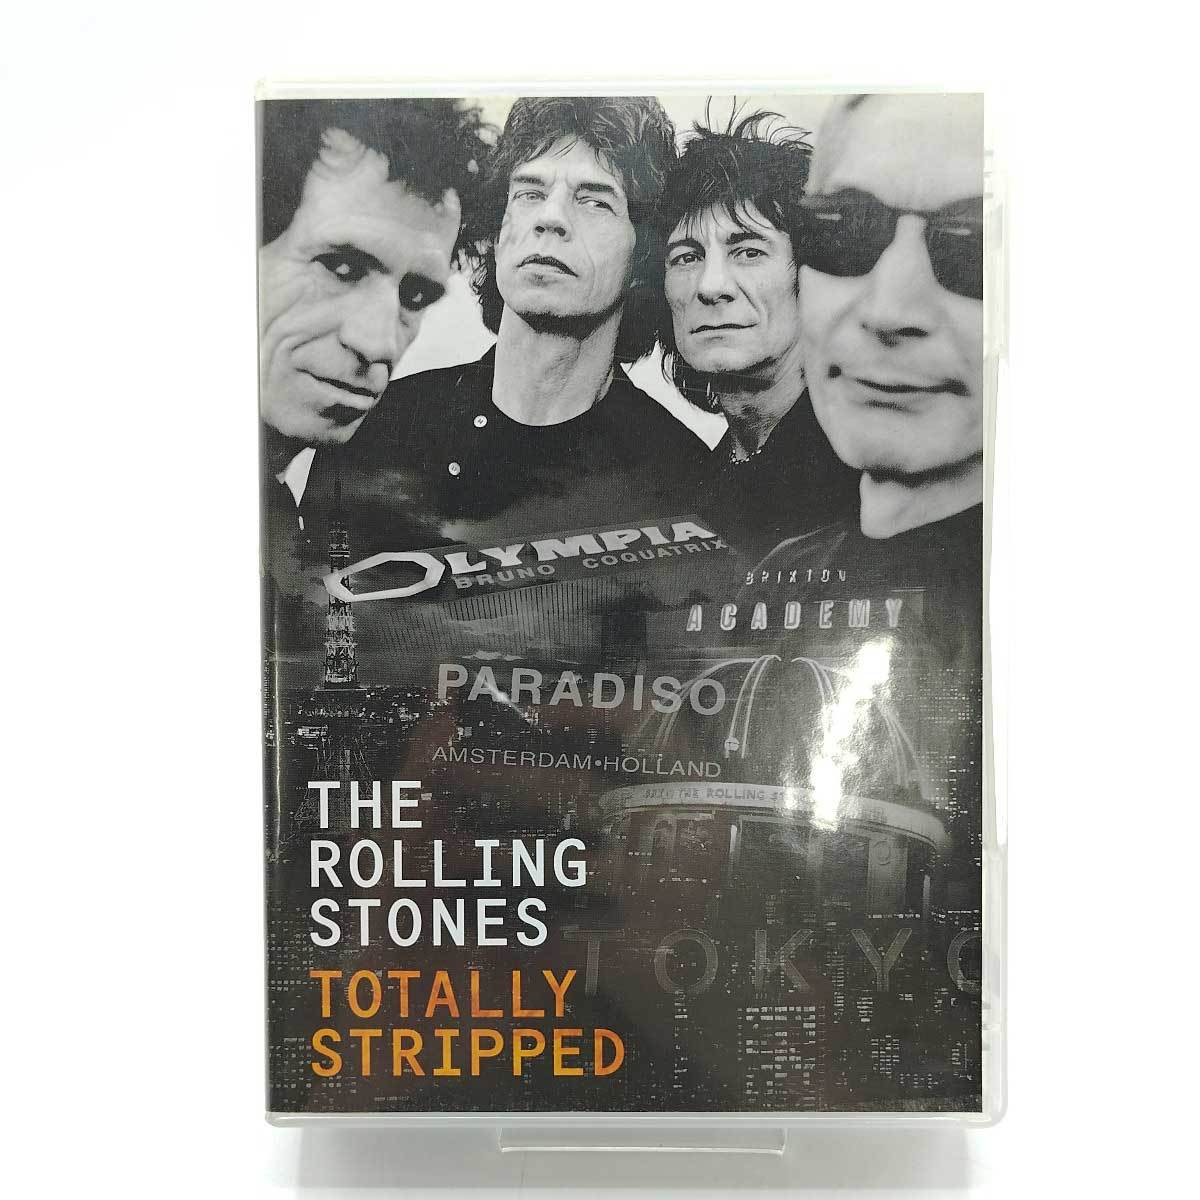 【中古】The Rolling Stones ローリング・ストーンズ Totally Stripped ブルーレイ Blu-ray 限定盤 国内 5枚組_画像1